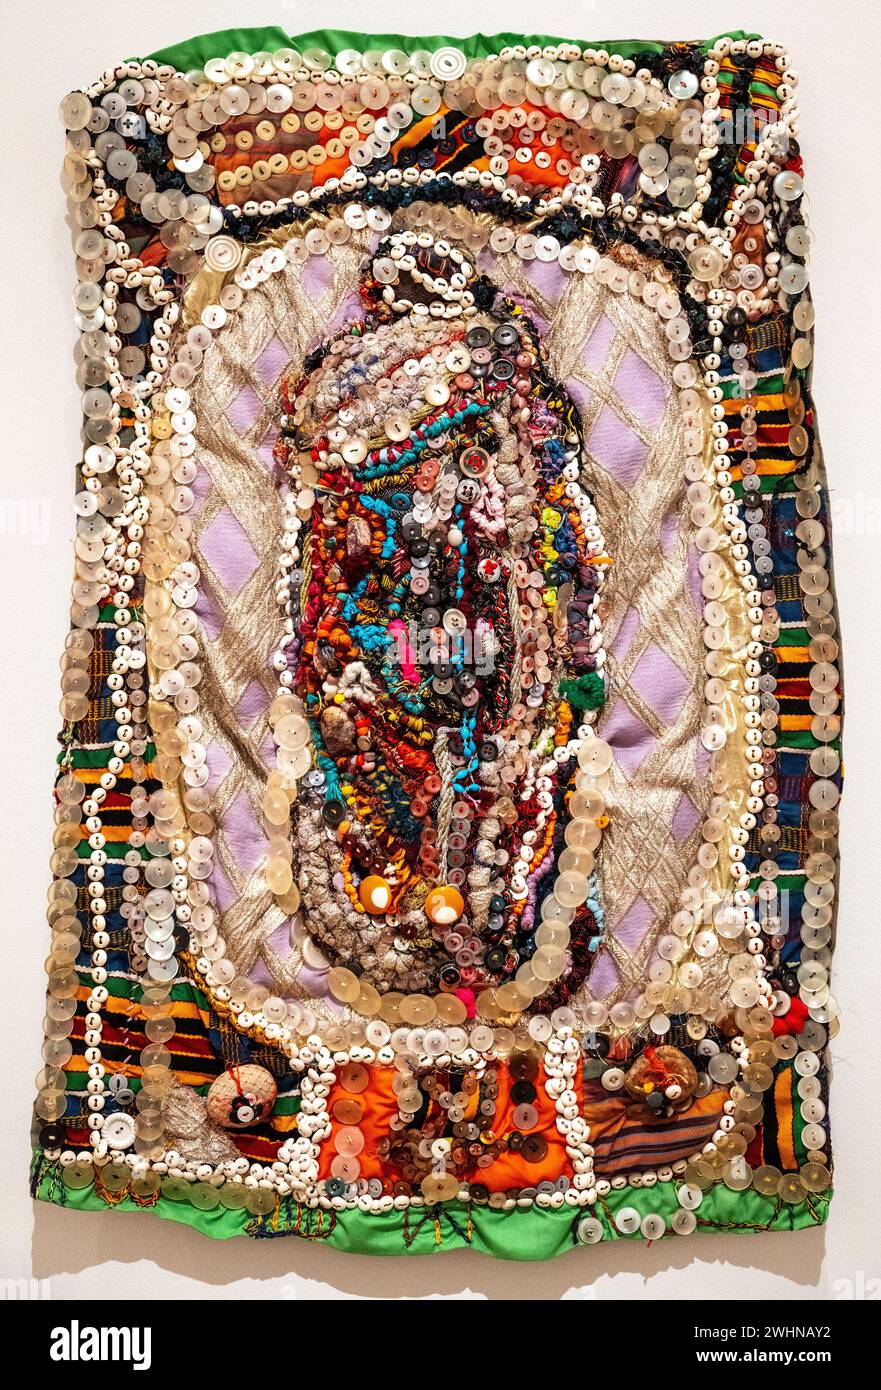 Elizabeth Talford Scott, un'arte in tessuto cucito a mano del 1993-96, chiamata "Temple" al Baltimore Museum of Art Foto Stock